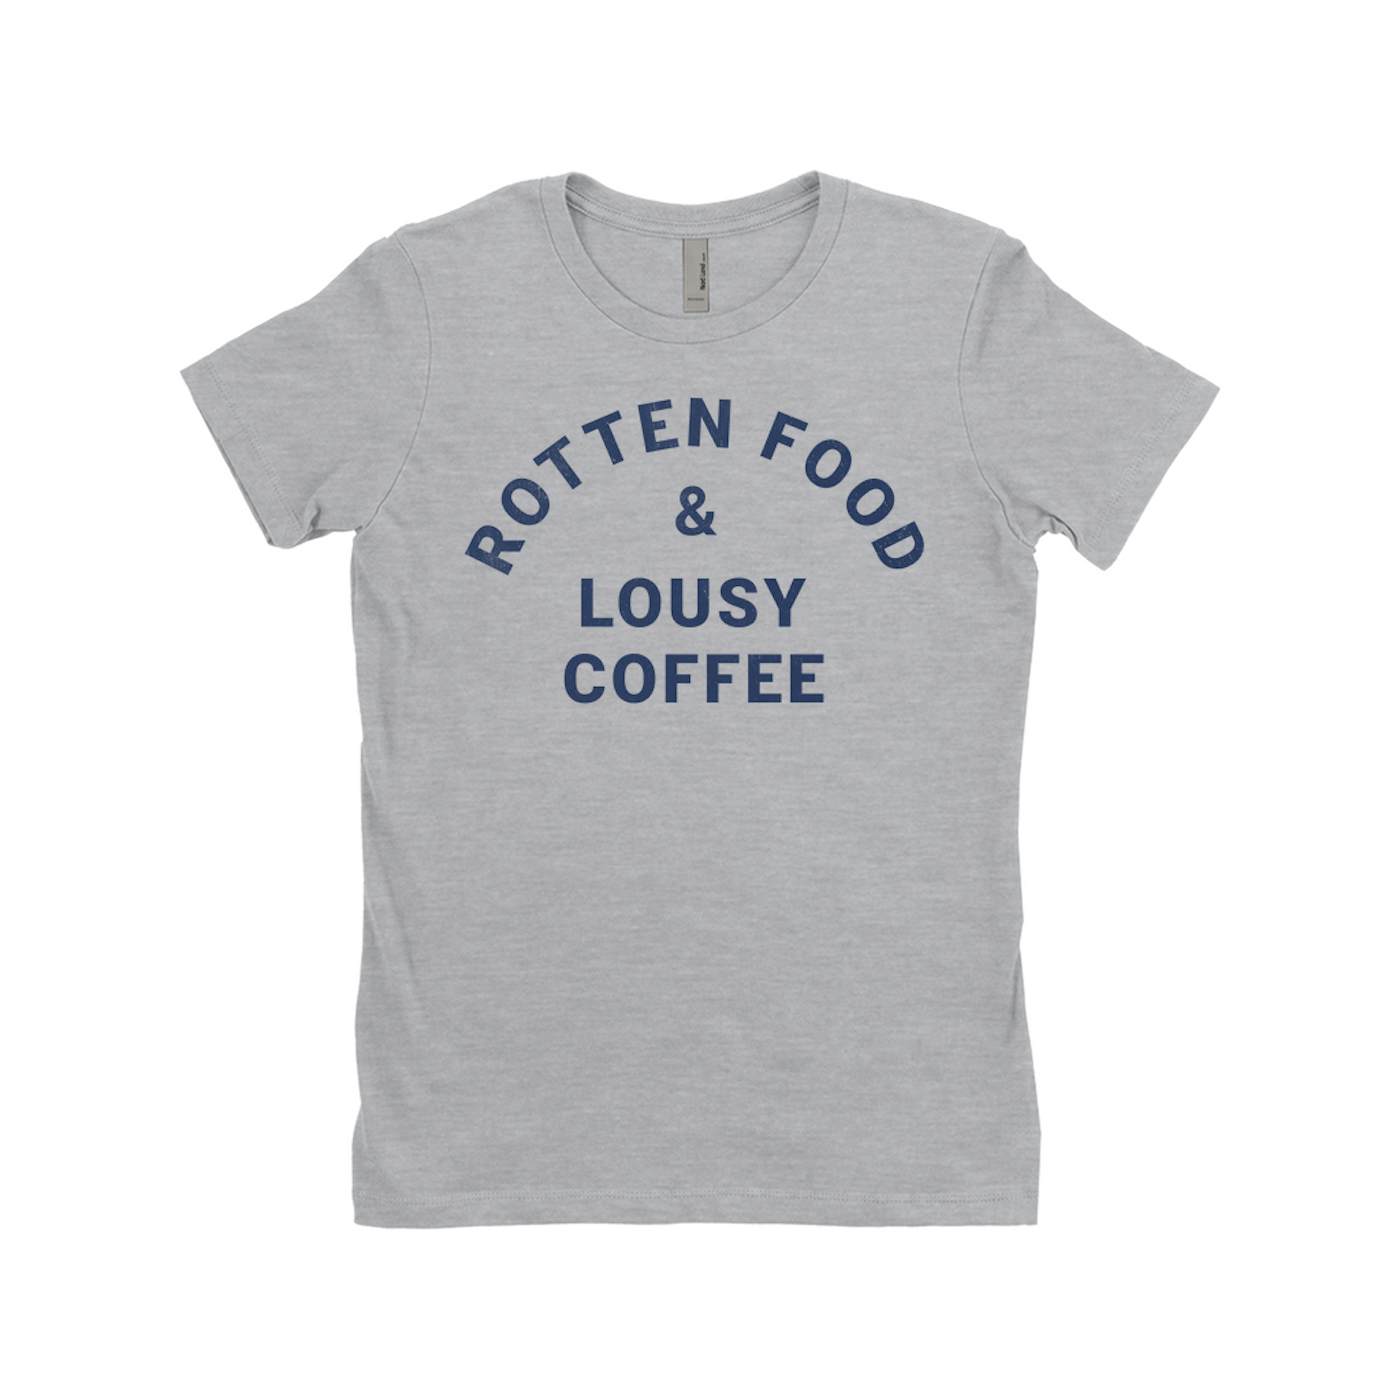 Joe Cocker Ladies' Boyfriend T-Shirt | Rotten Food & Lousy Coffee Tee worn by Joe Cocker Shirt